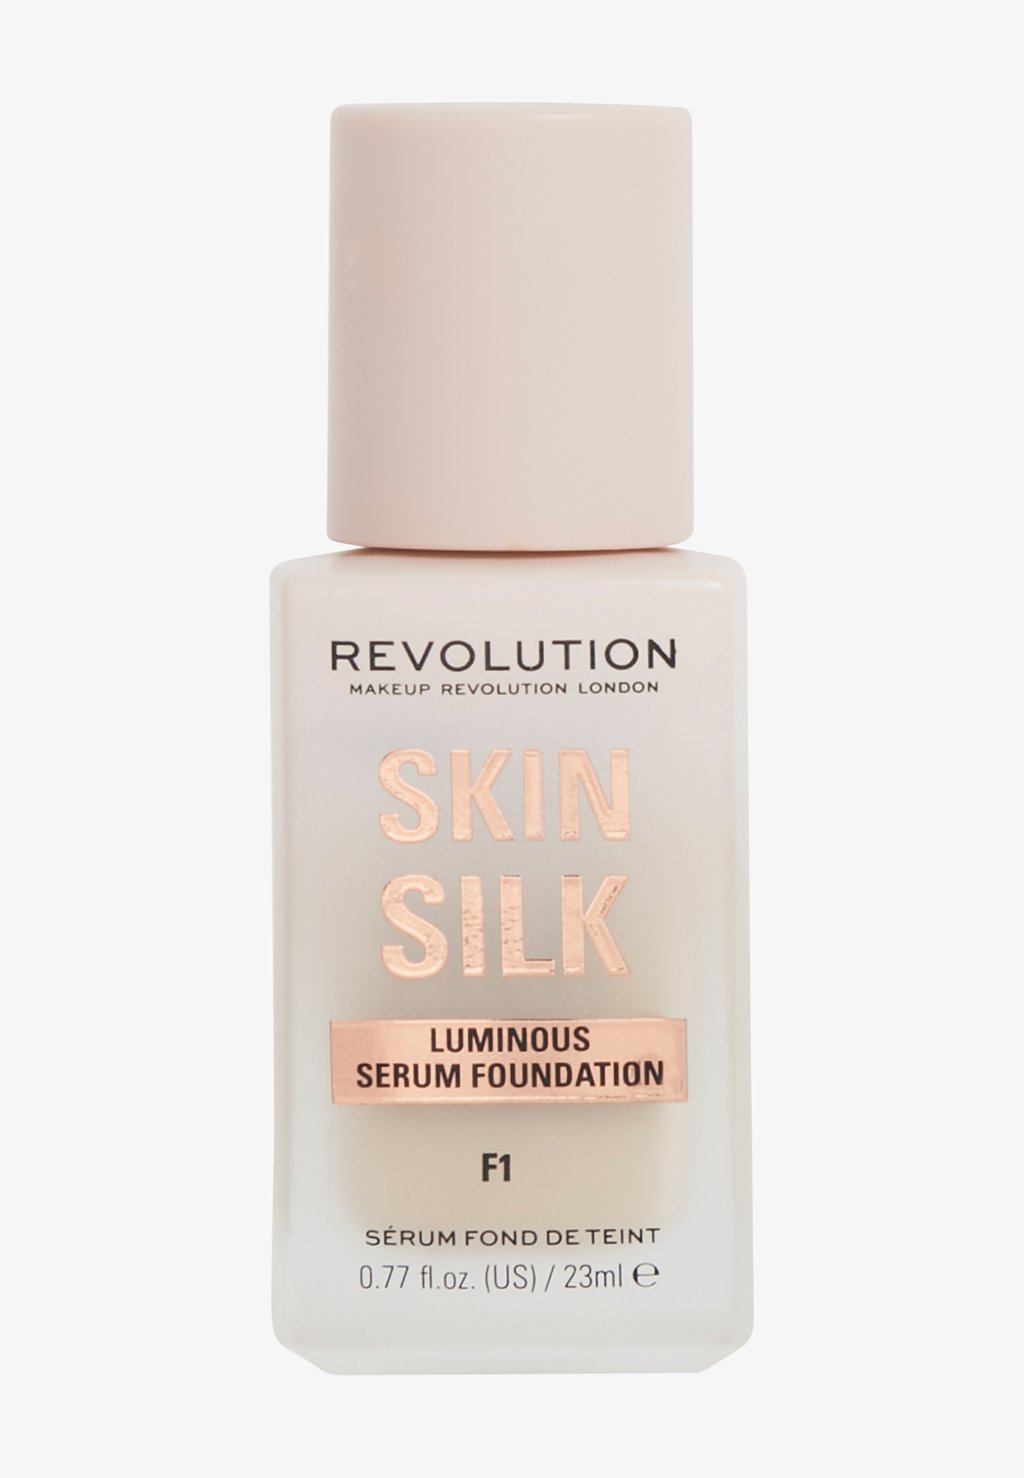 Тональный крем Revolution Skin Silk Serum Foundation Makeup Revolution, цвет f1